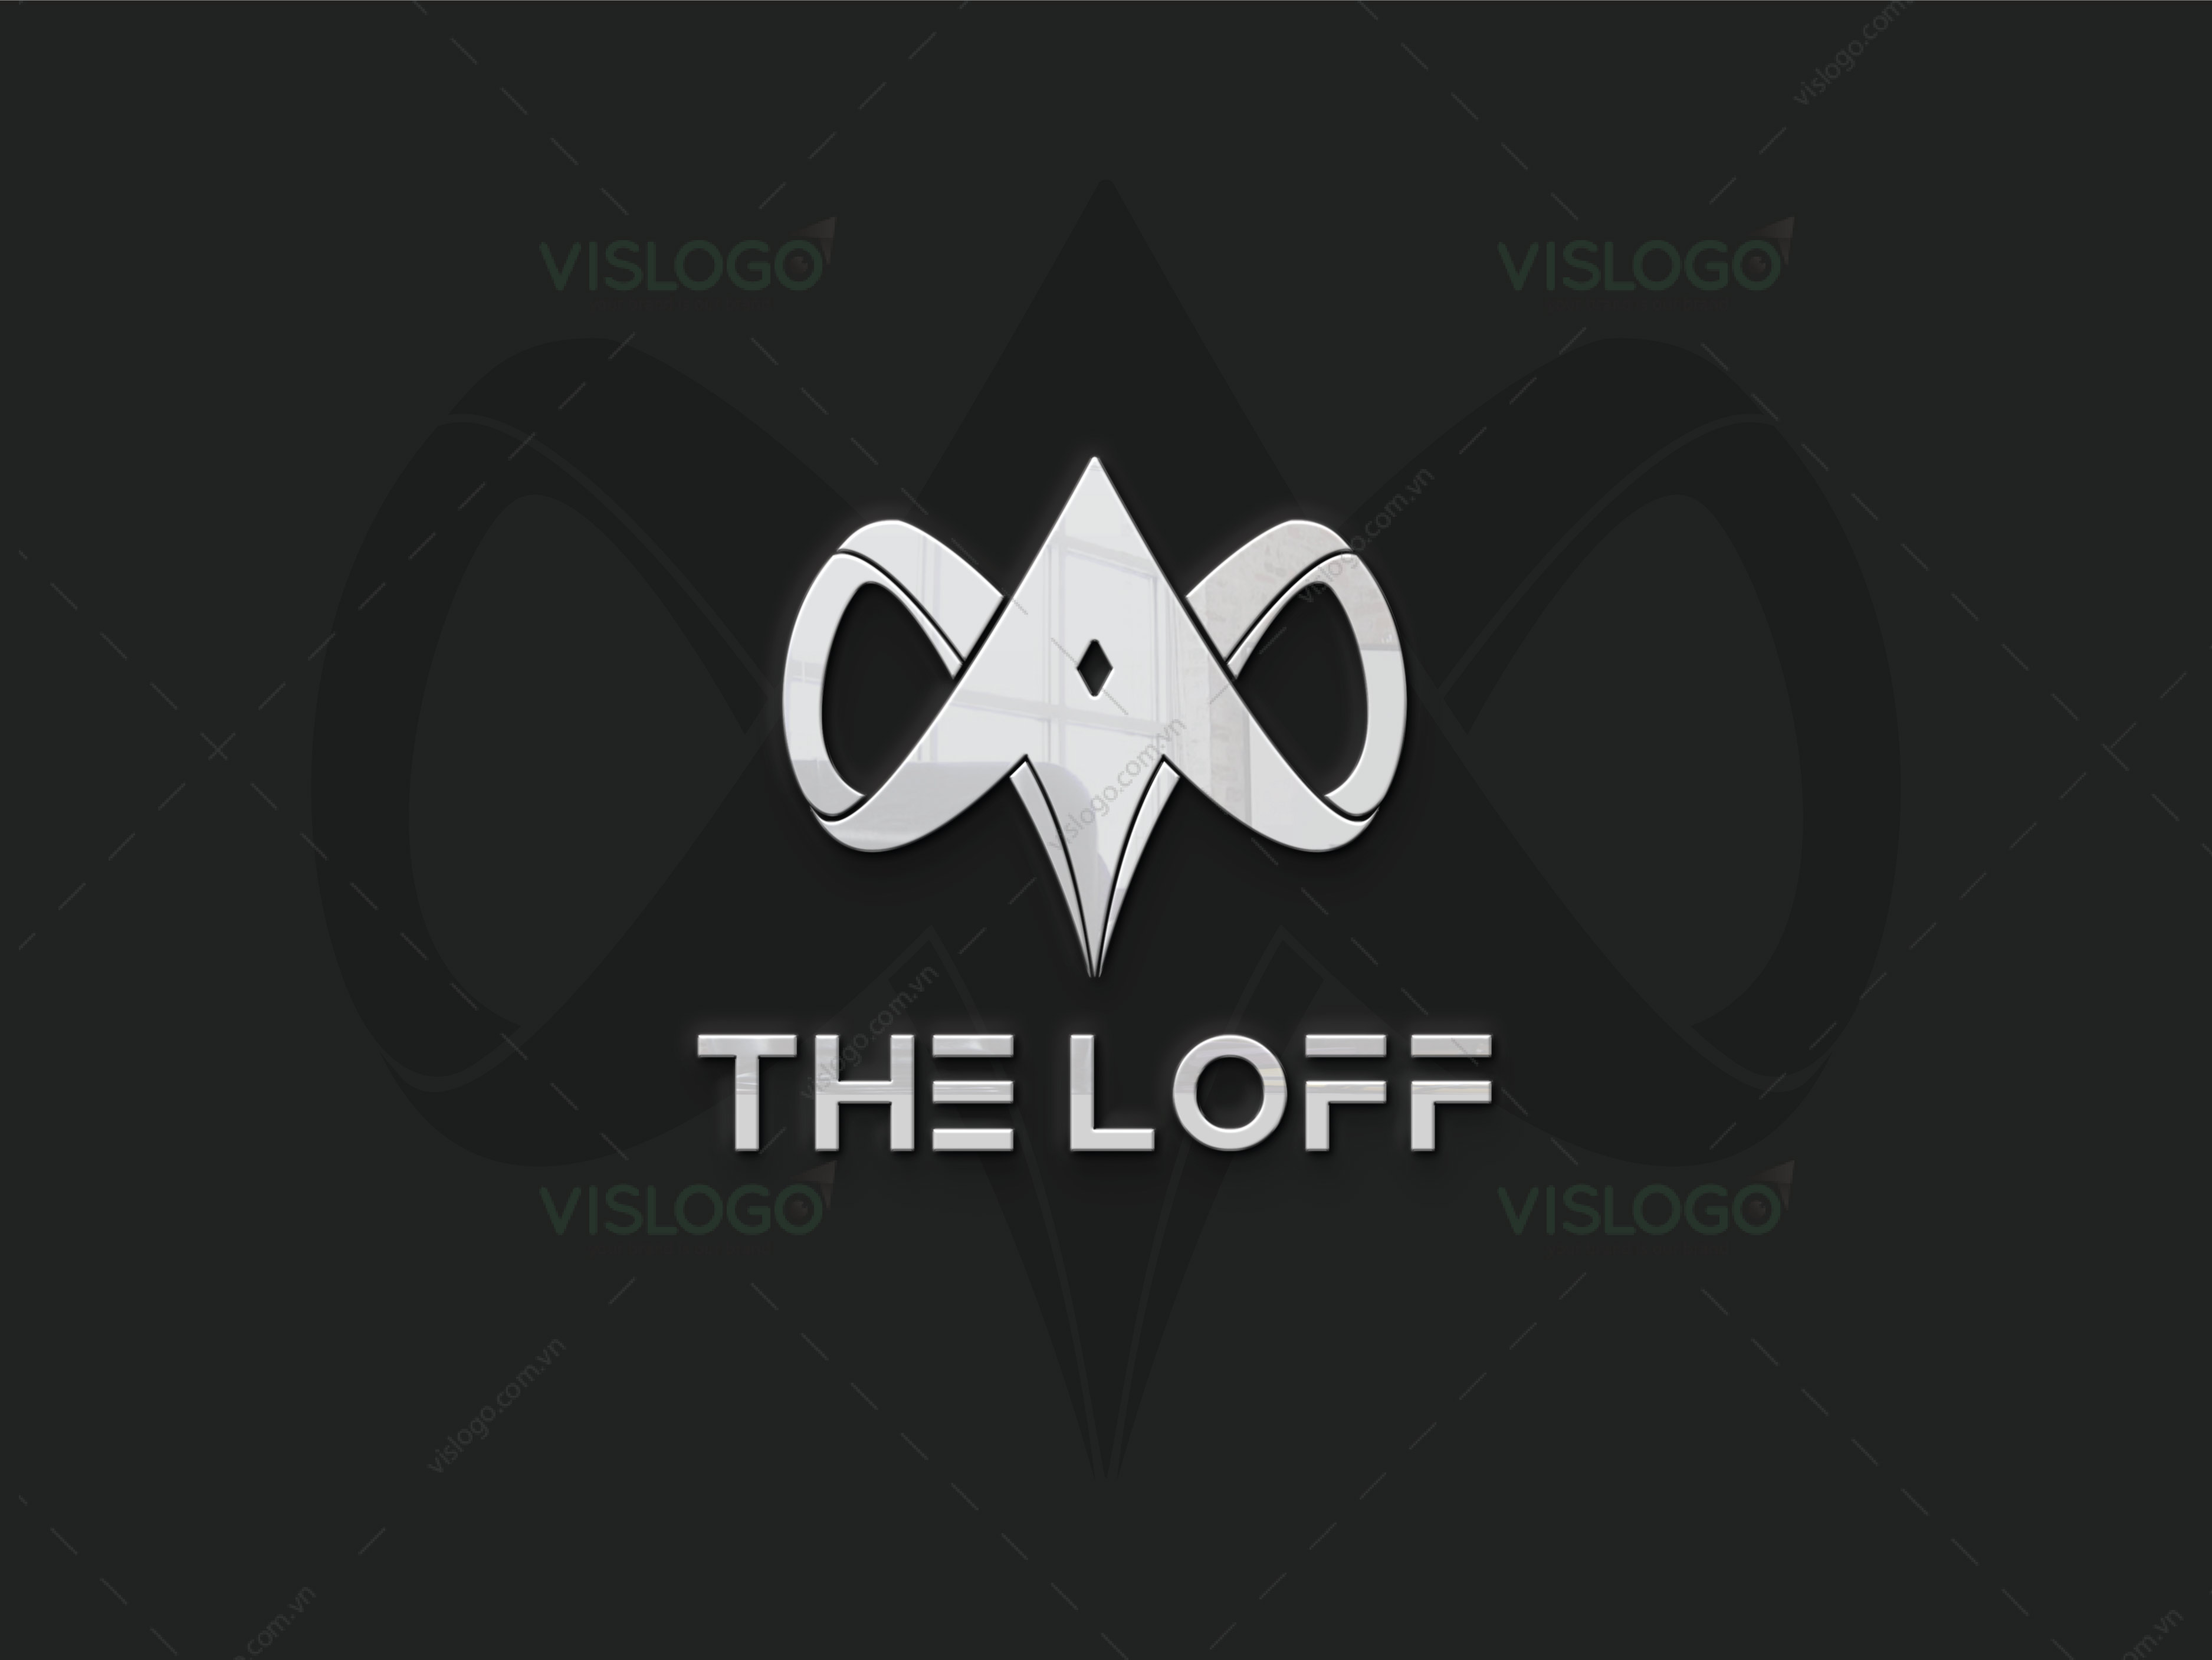 Thiết kế logo, nhận diện thương hiệu thời trang THE LOFF